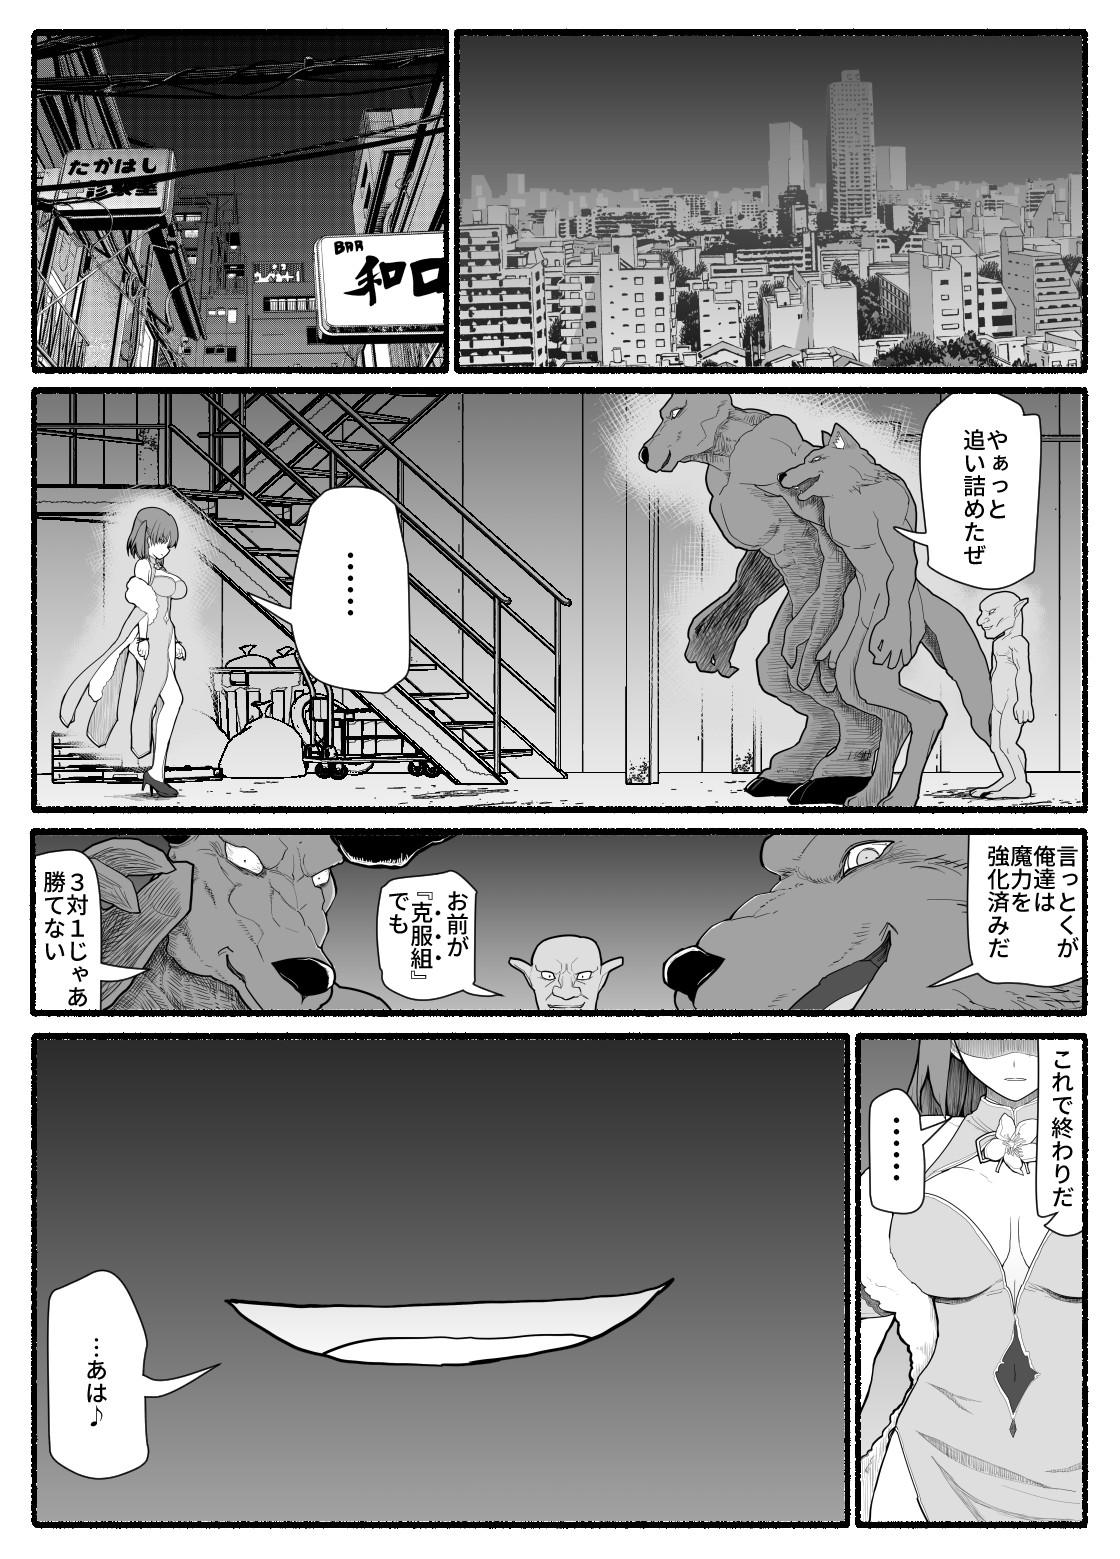 Cameltoe Mahou Shoujo VS Inma Seibutsu 12 - Original Milf - Page 3